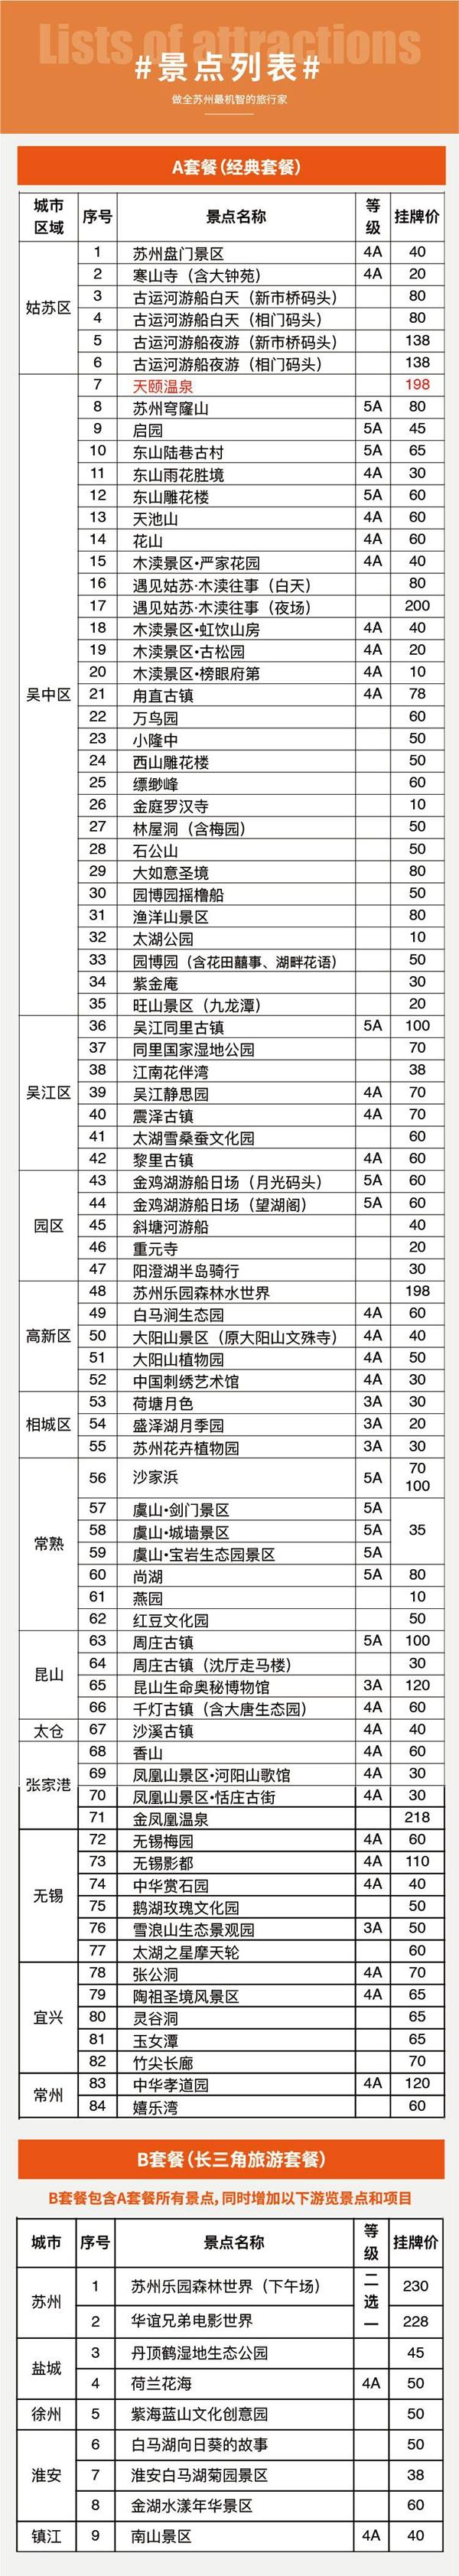 2023苏州惠民休闲年卡景点名单+办理流程+年卡价格